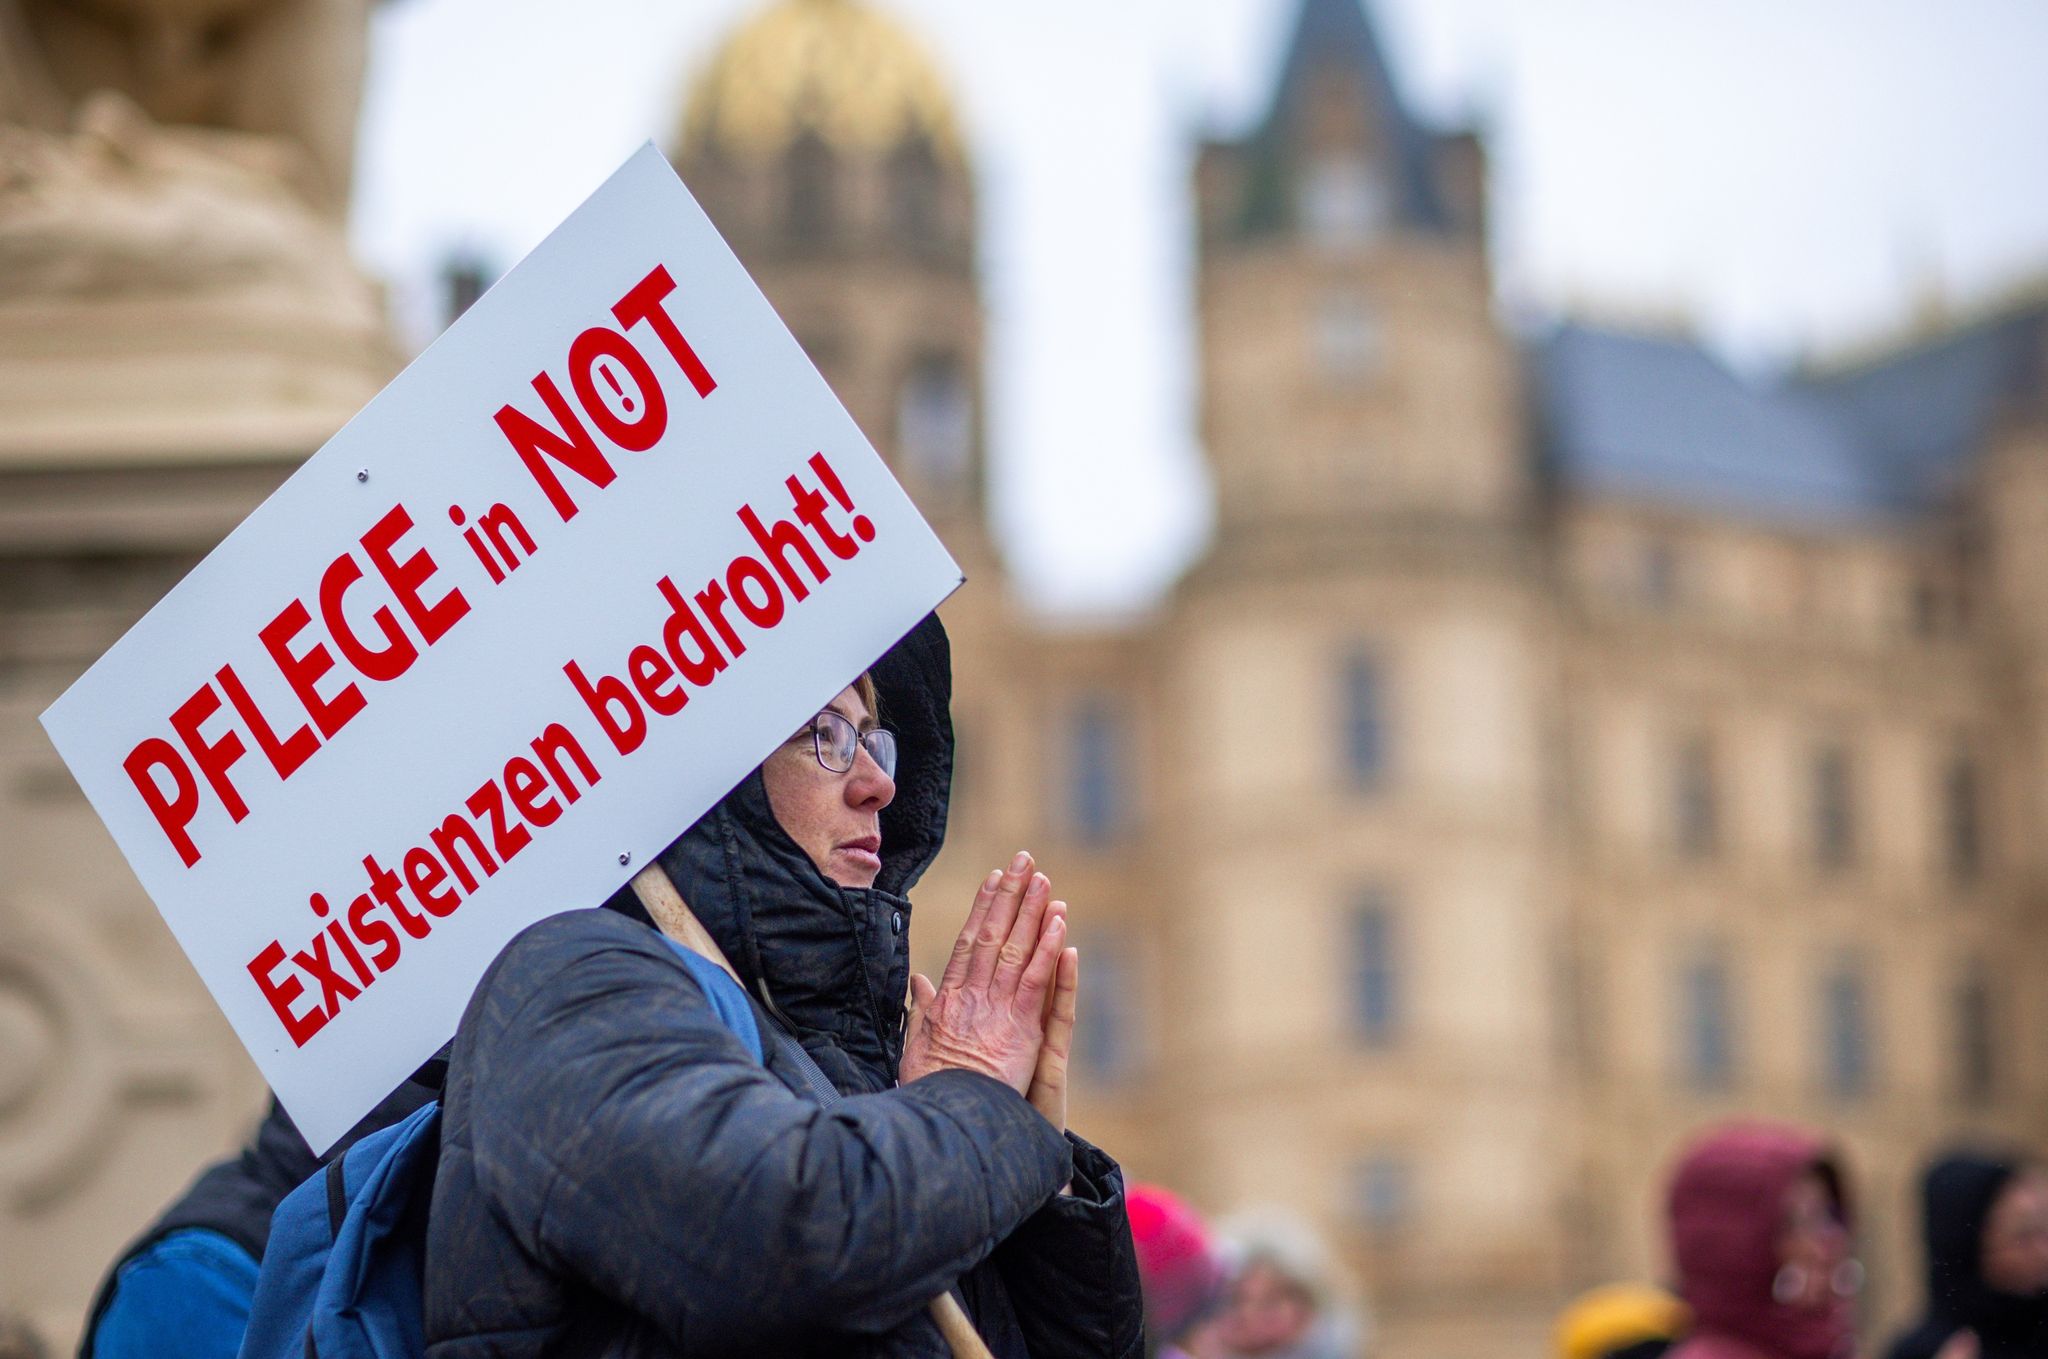 Bei einer Protestaktion vor dem Schweriner Landtag hält eine Teilnehmerin ein Schild mit der Aufschrift «Pflege in Not - Existenzen bedroht!».